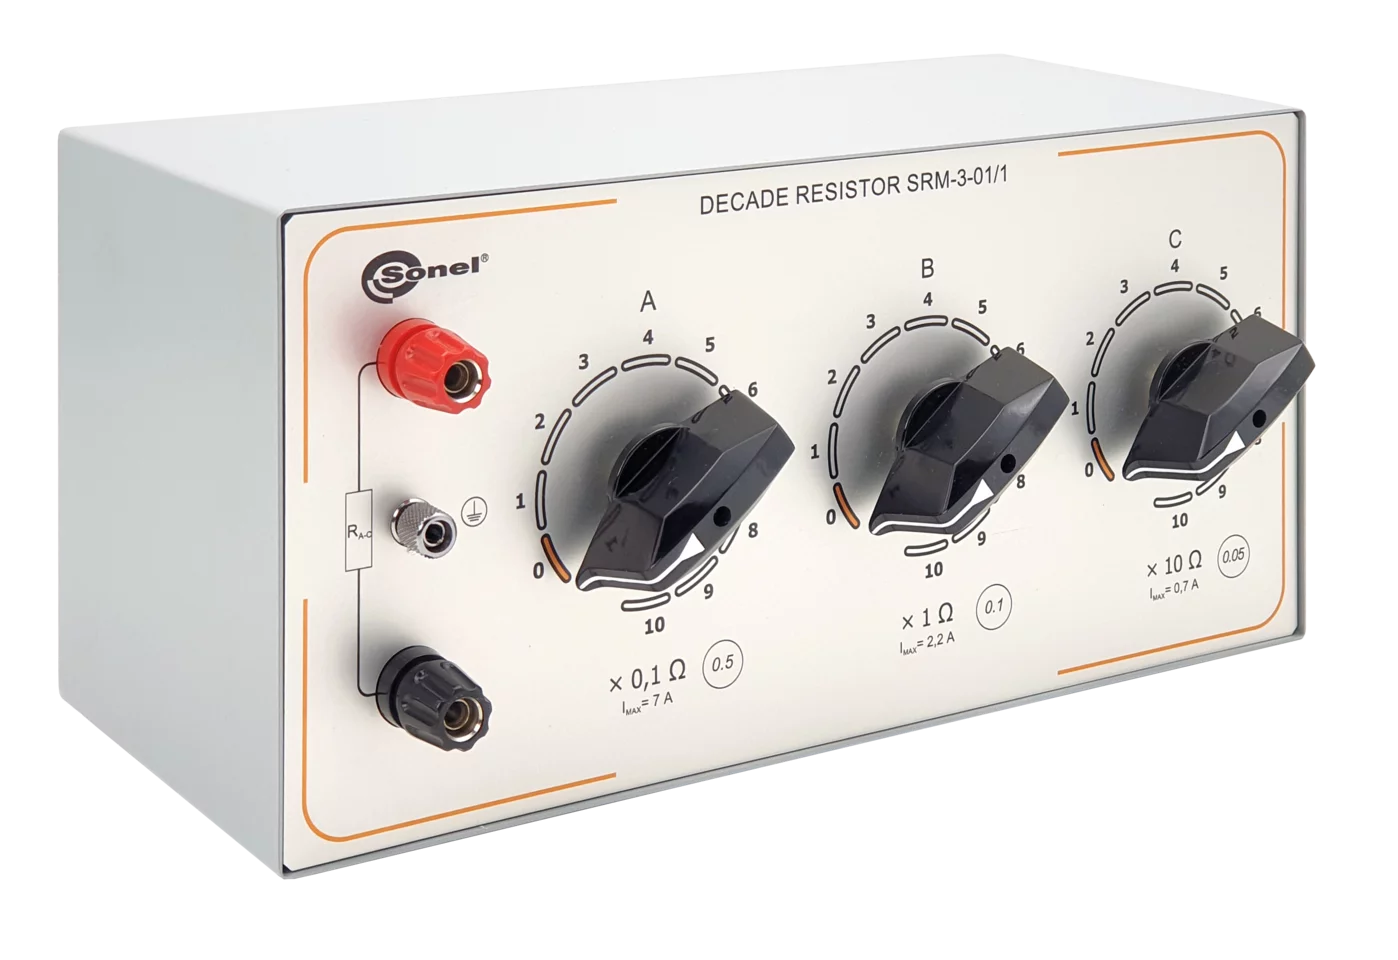 Manual decade resistor SRM-3-01/3-1